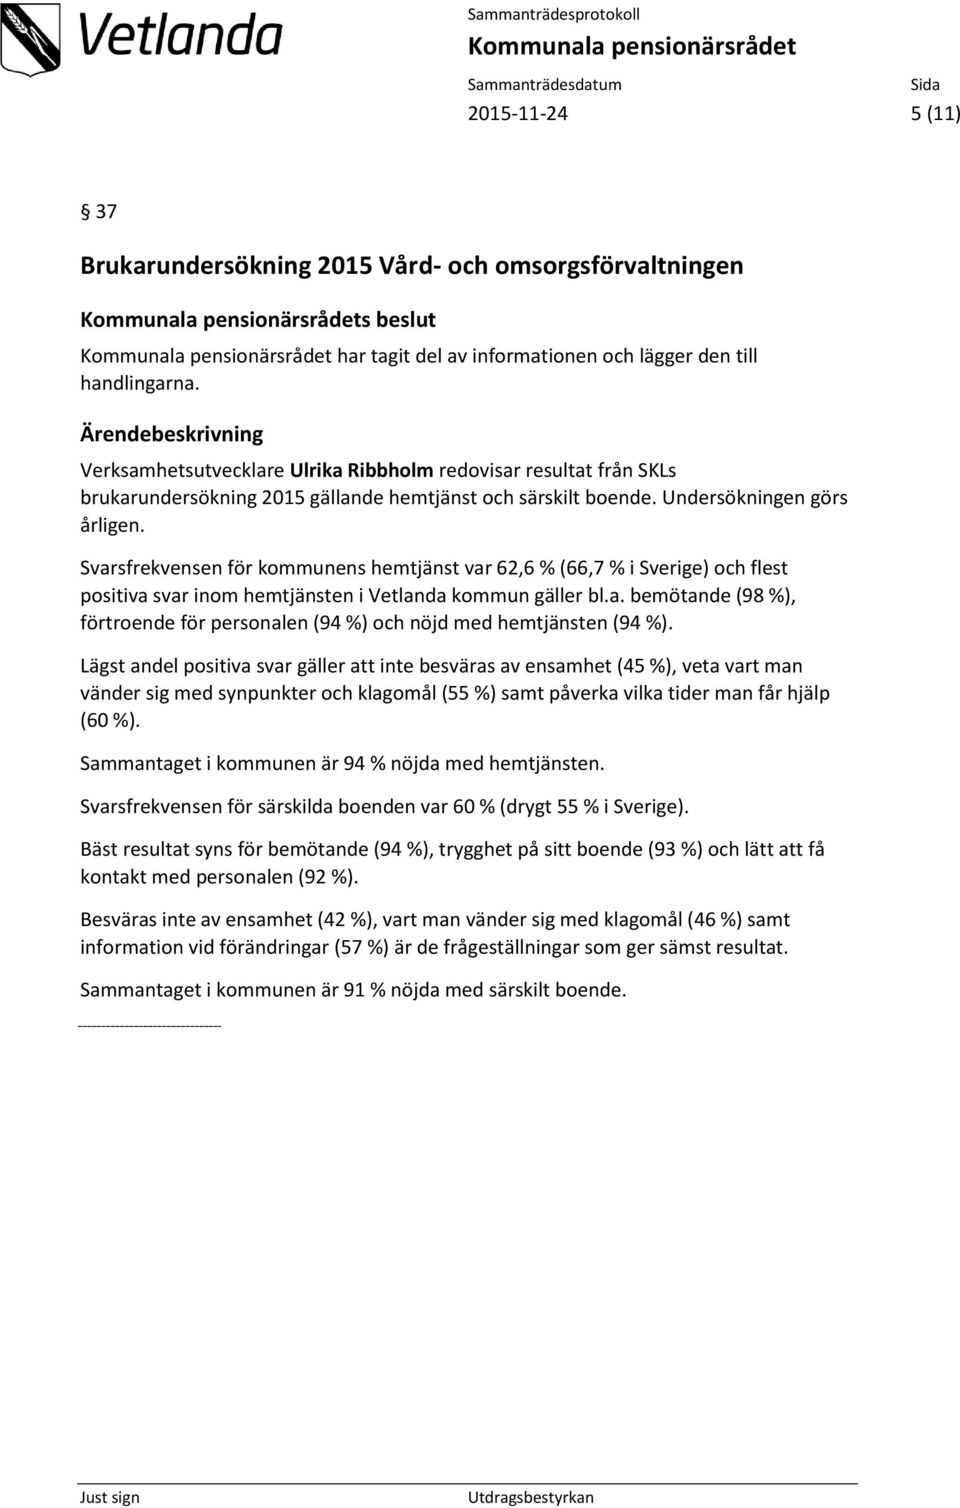 Svarsfrekvensen för kommunens hemtjänst var 62,6 % (66,7 % i Sverige) och flest positiva svar inom hemtjänsten i Vetlanda kommun gäller bl.a. bemötande (98 %), förtroende för personalen (94 %) och nöjd med hemtjänsten (94 %).